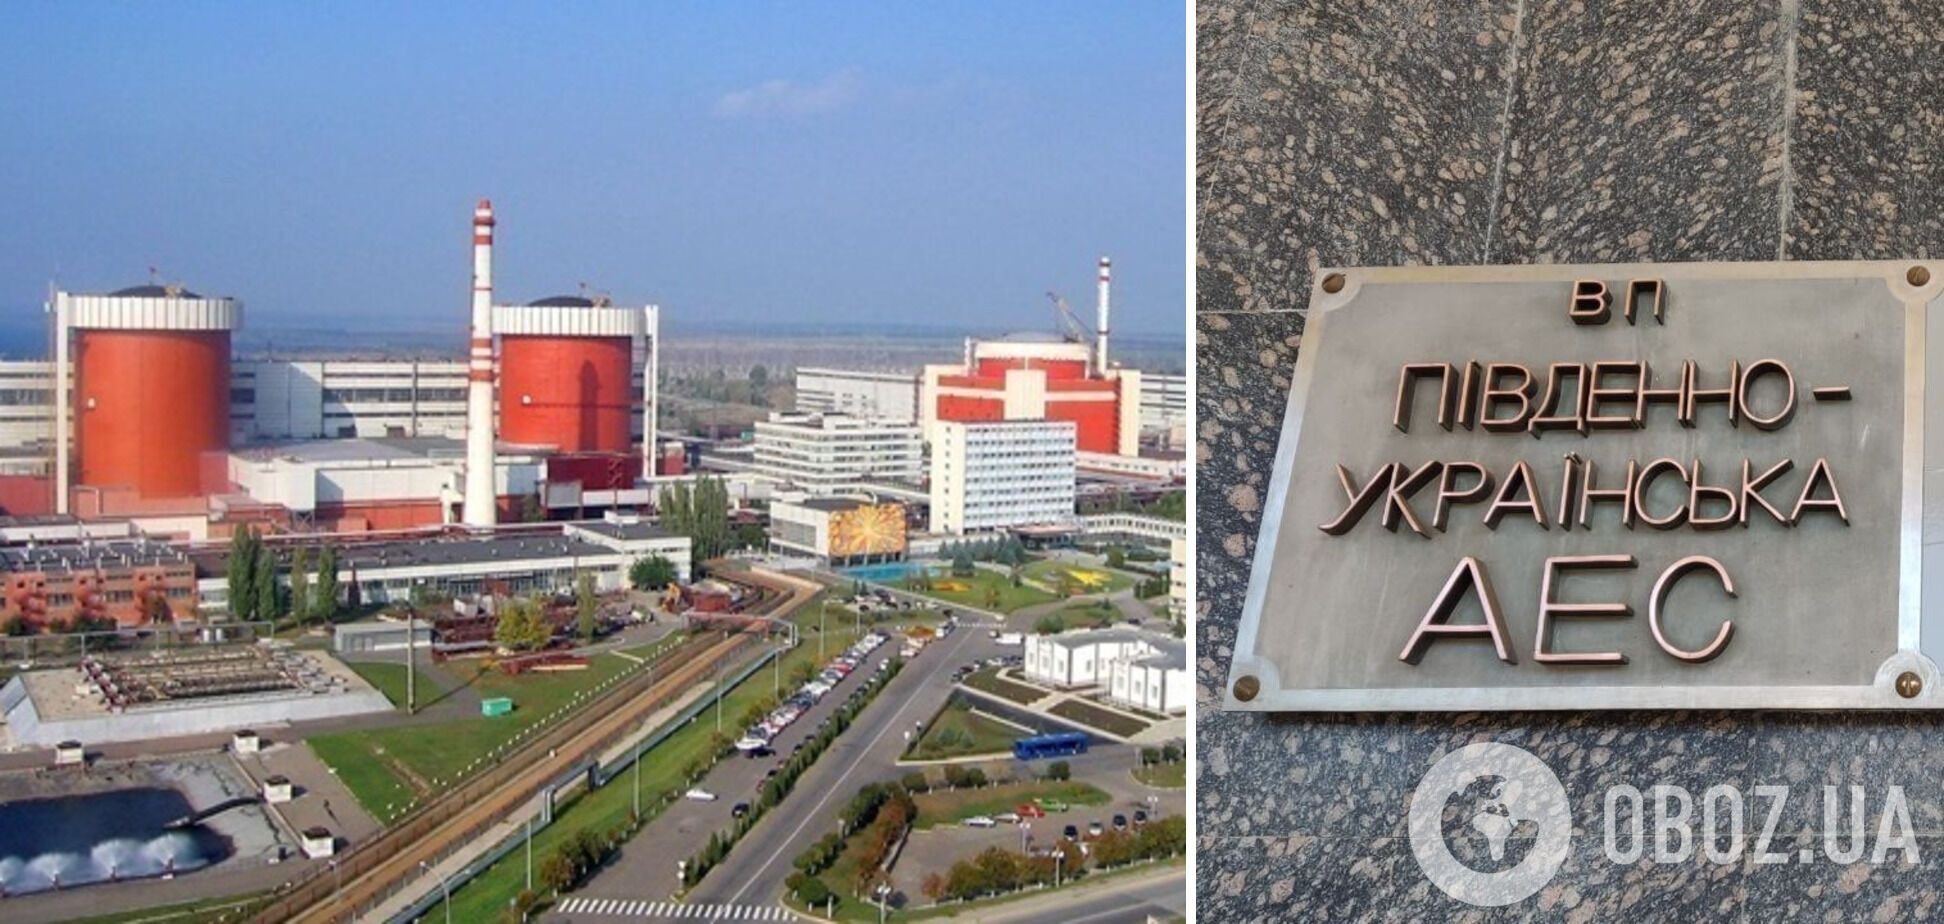 Южно-Украинскую АЭС официально переименовали